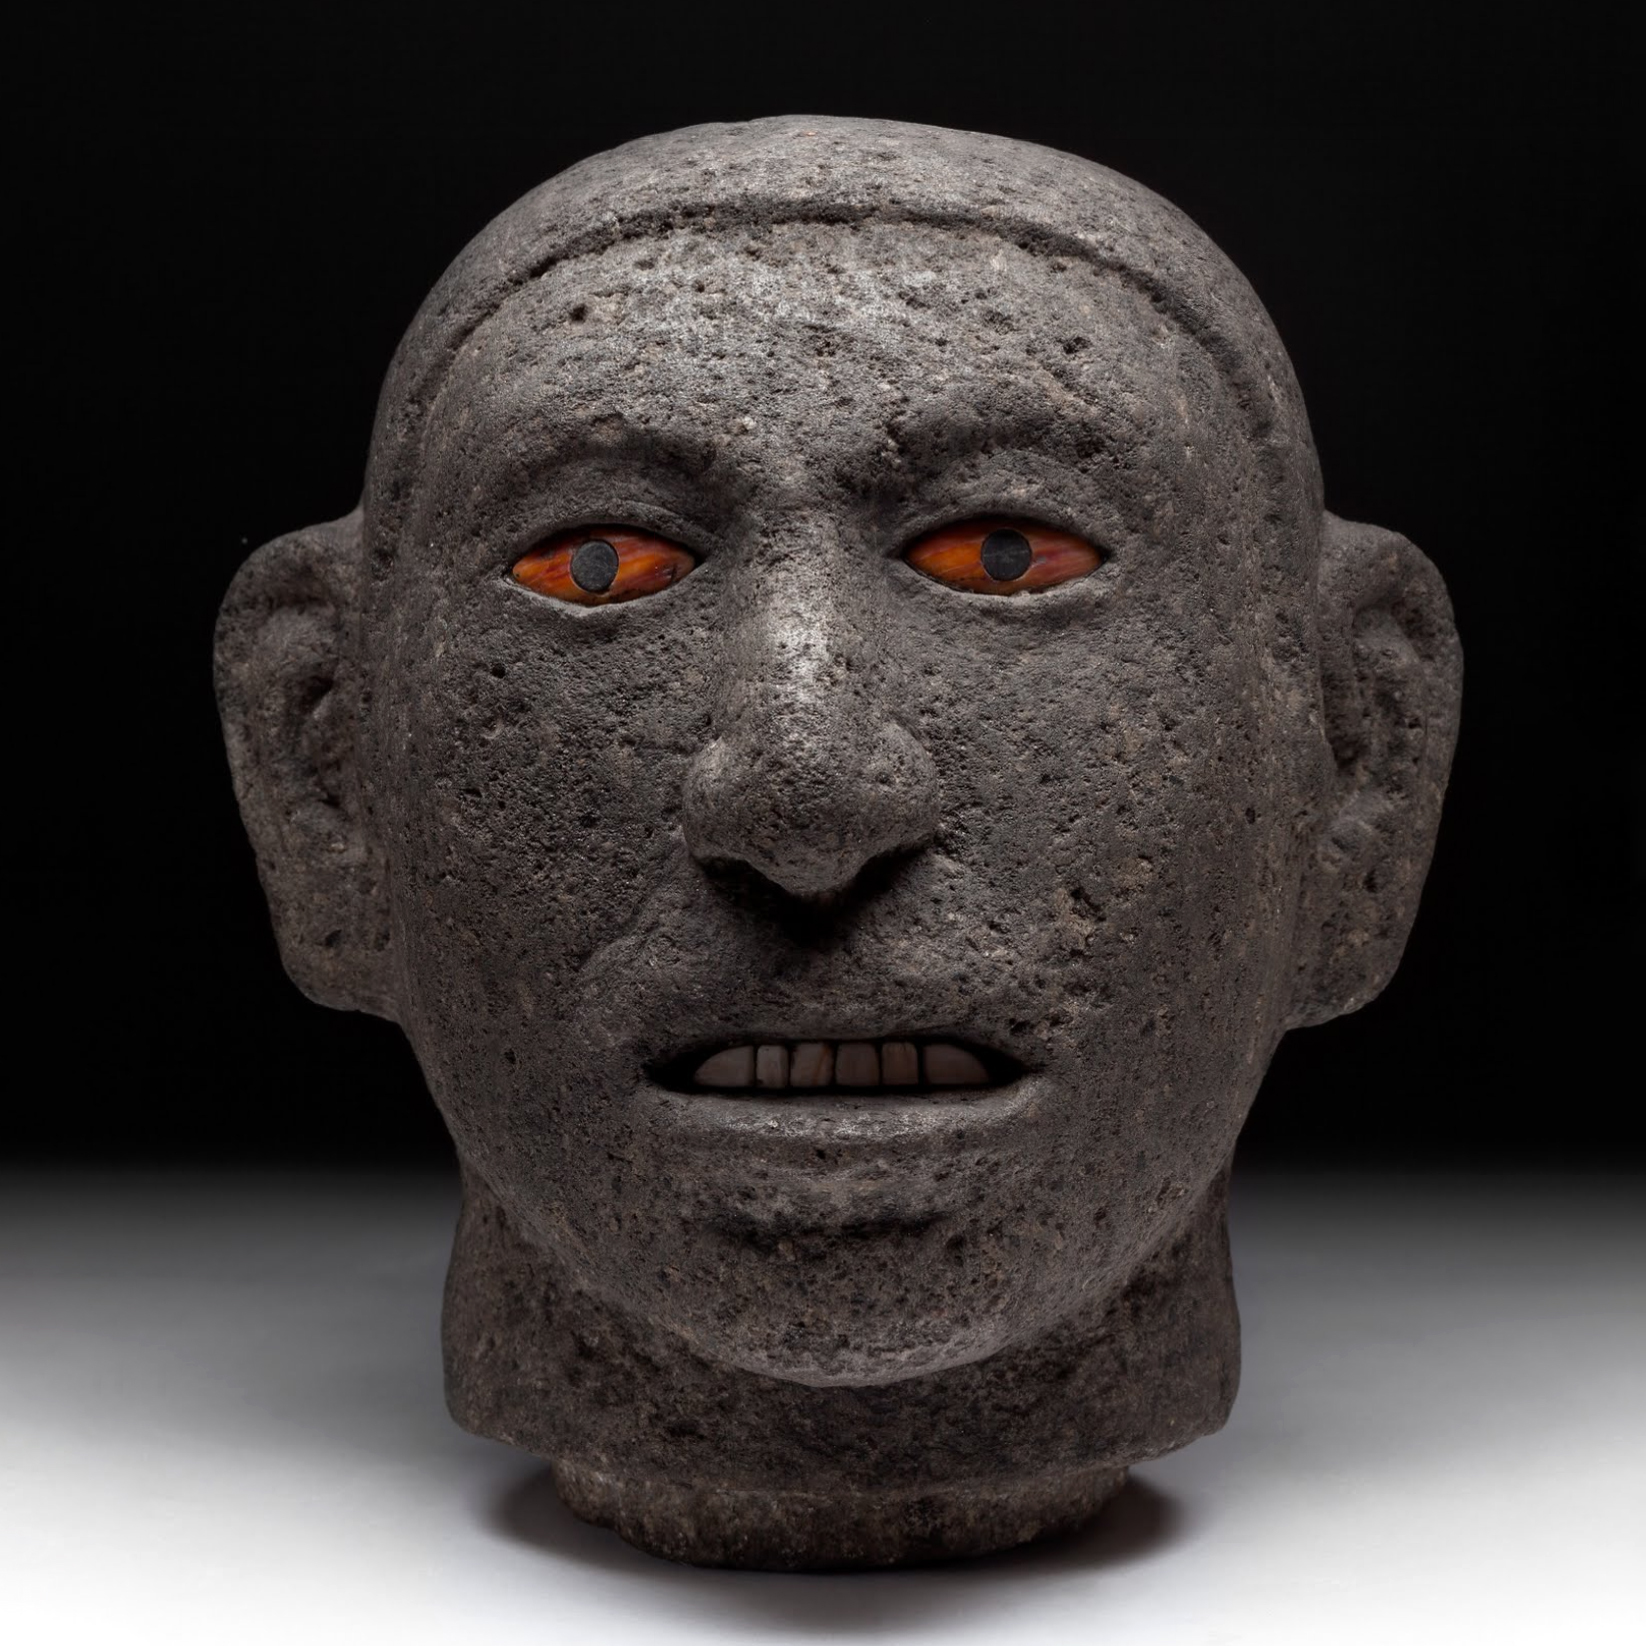 Голова человека, опьяненного пульке (?). Мексика, 1325-1521 гг. н.э. Коллекция Museo Nacional de Antropología, Mexico.